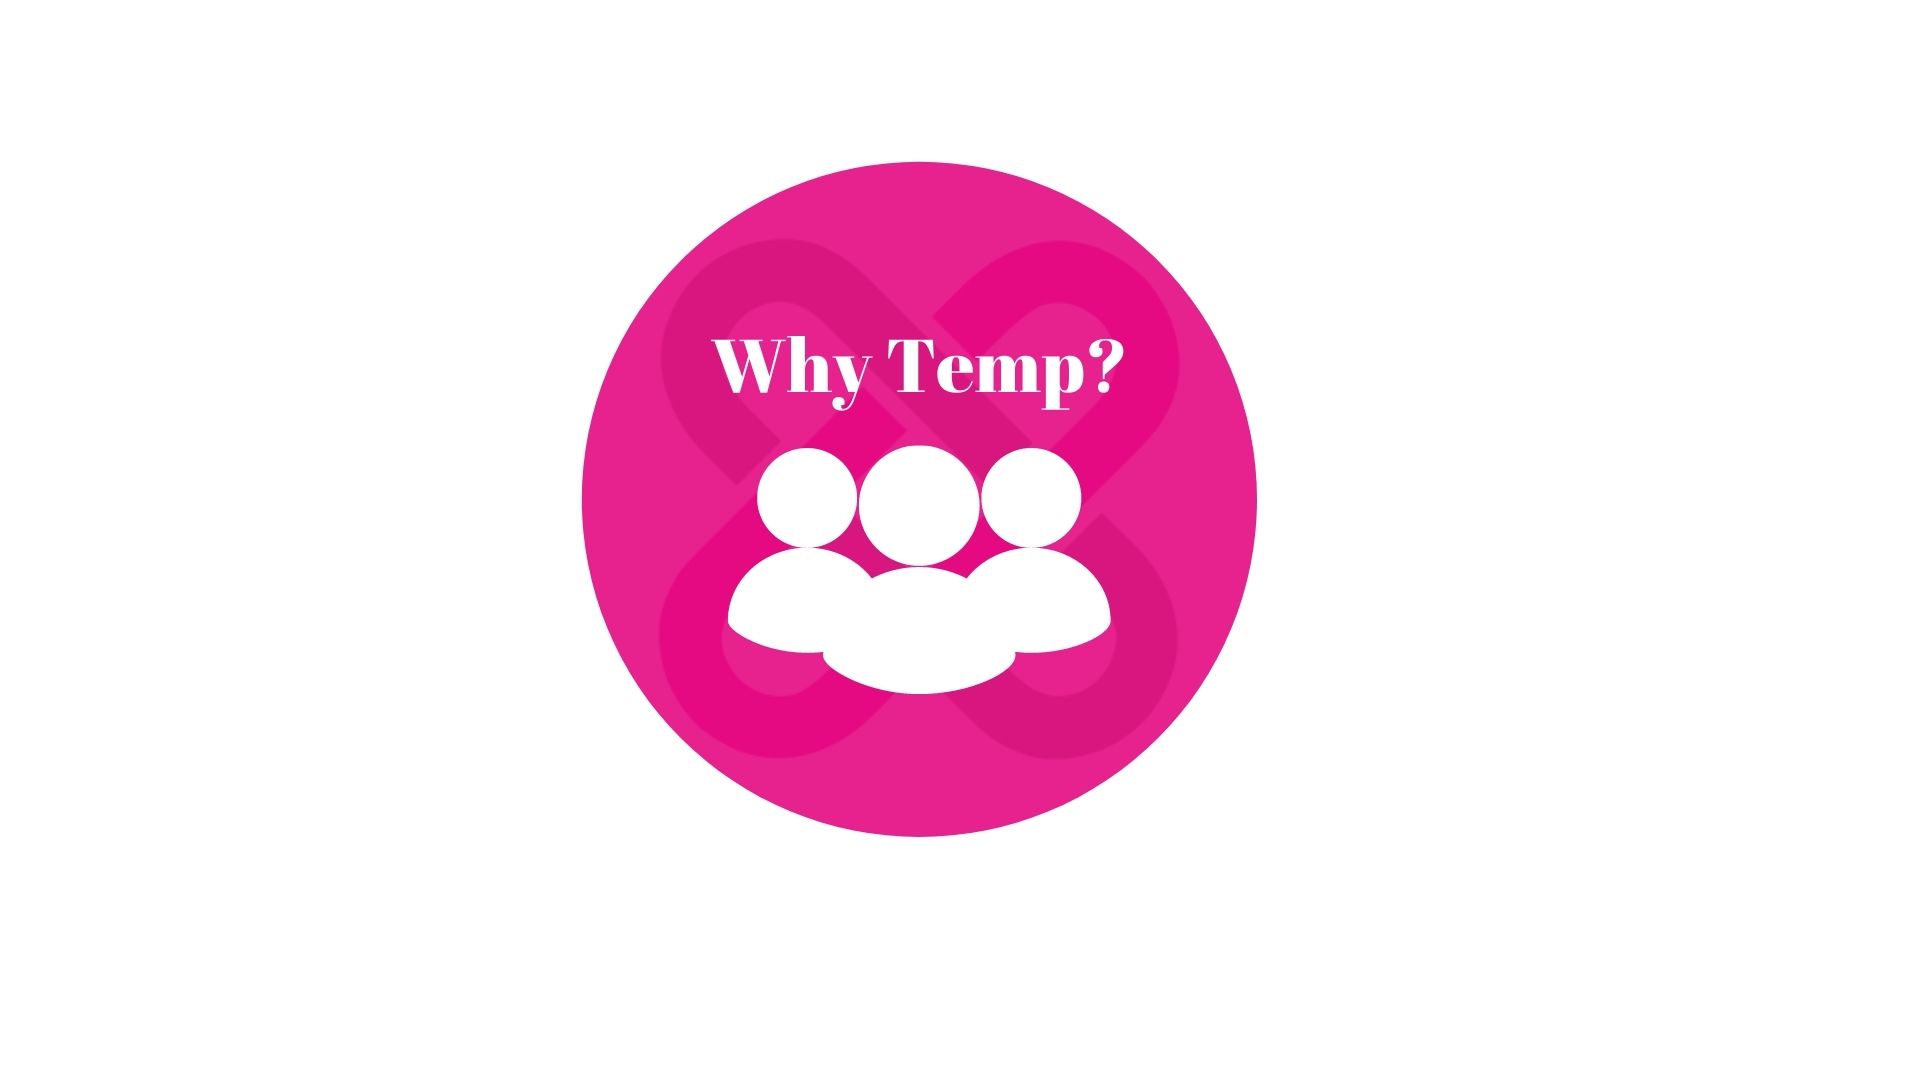 Why temp?